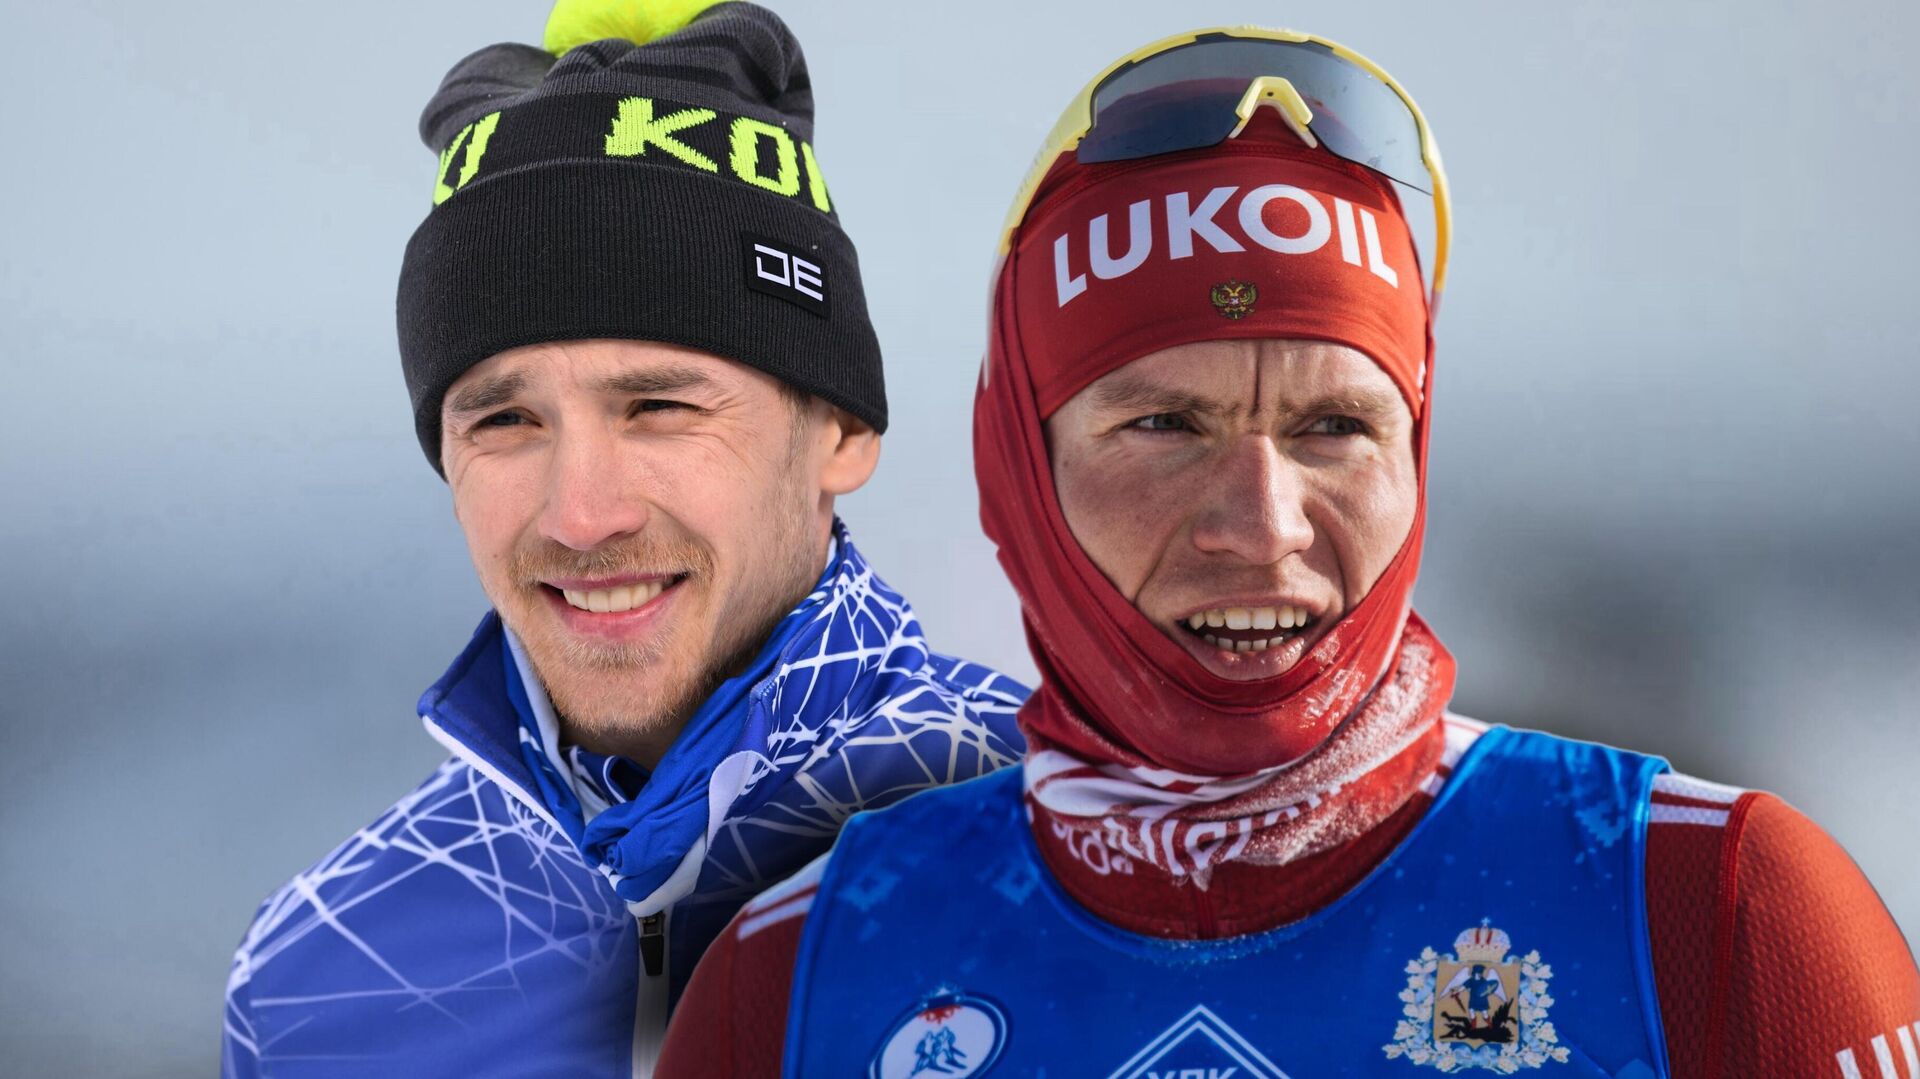 Прервавший серию Большунова лыжник Вокуев включён в состав сборной России